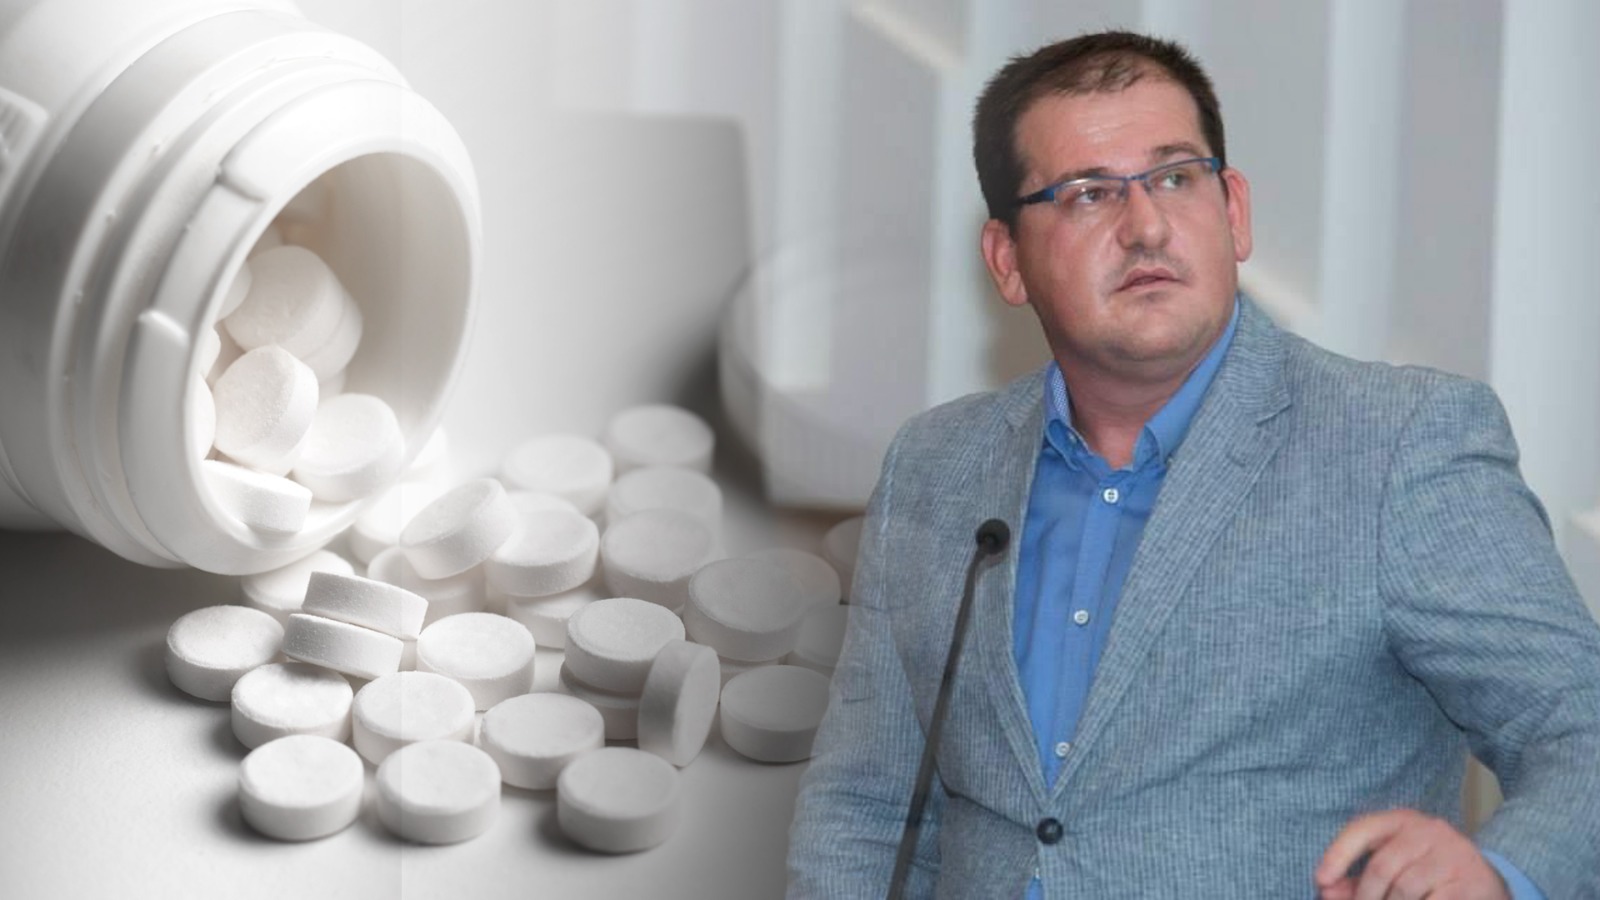 Aspirina rrit rrezikun për infarkt? Studimi viral i mjekut shqiptar, Bigfarma kundër tij